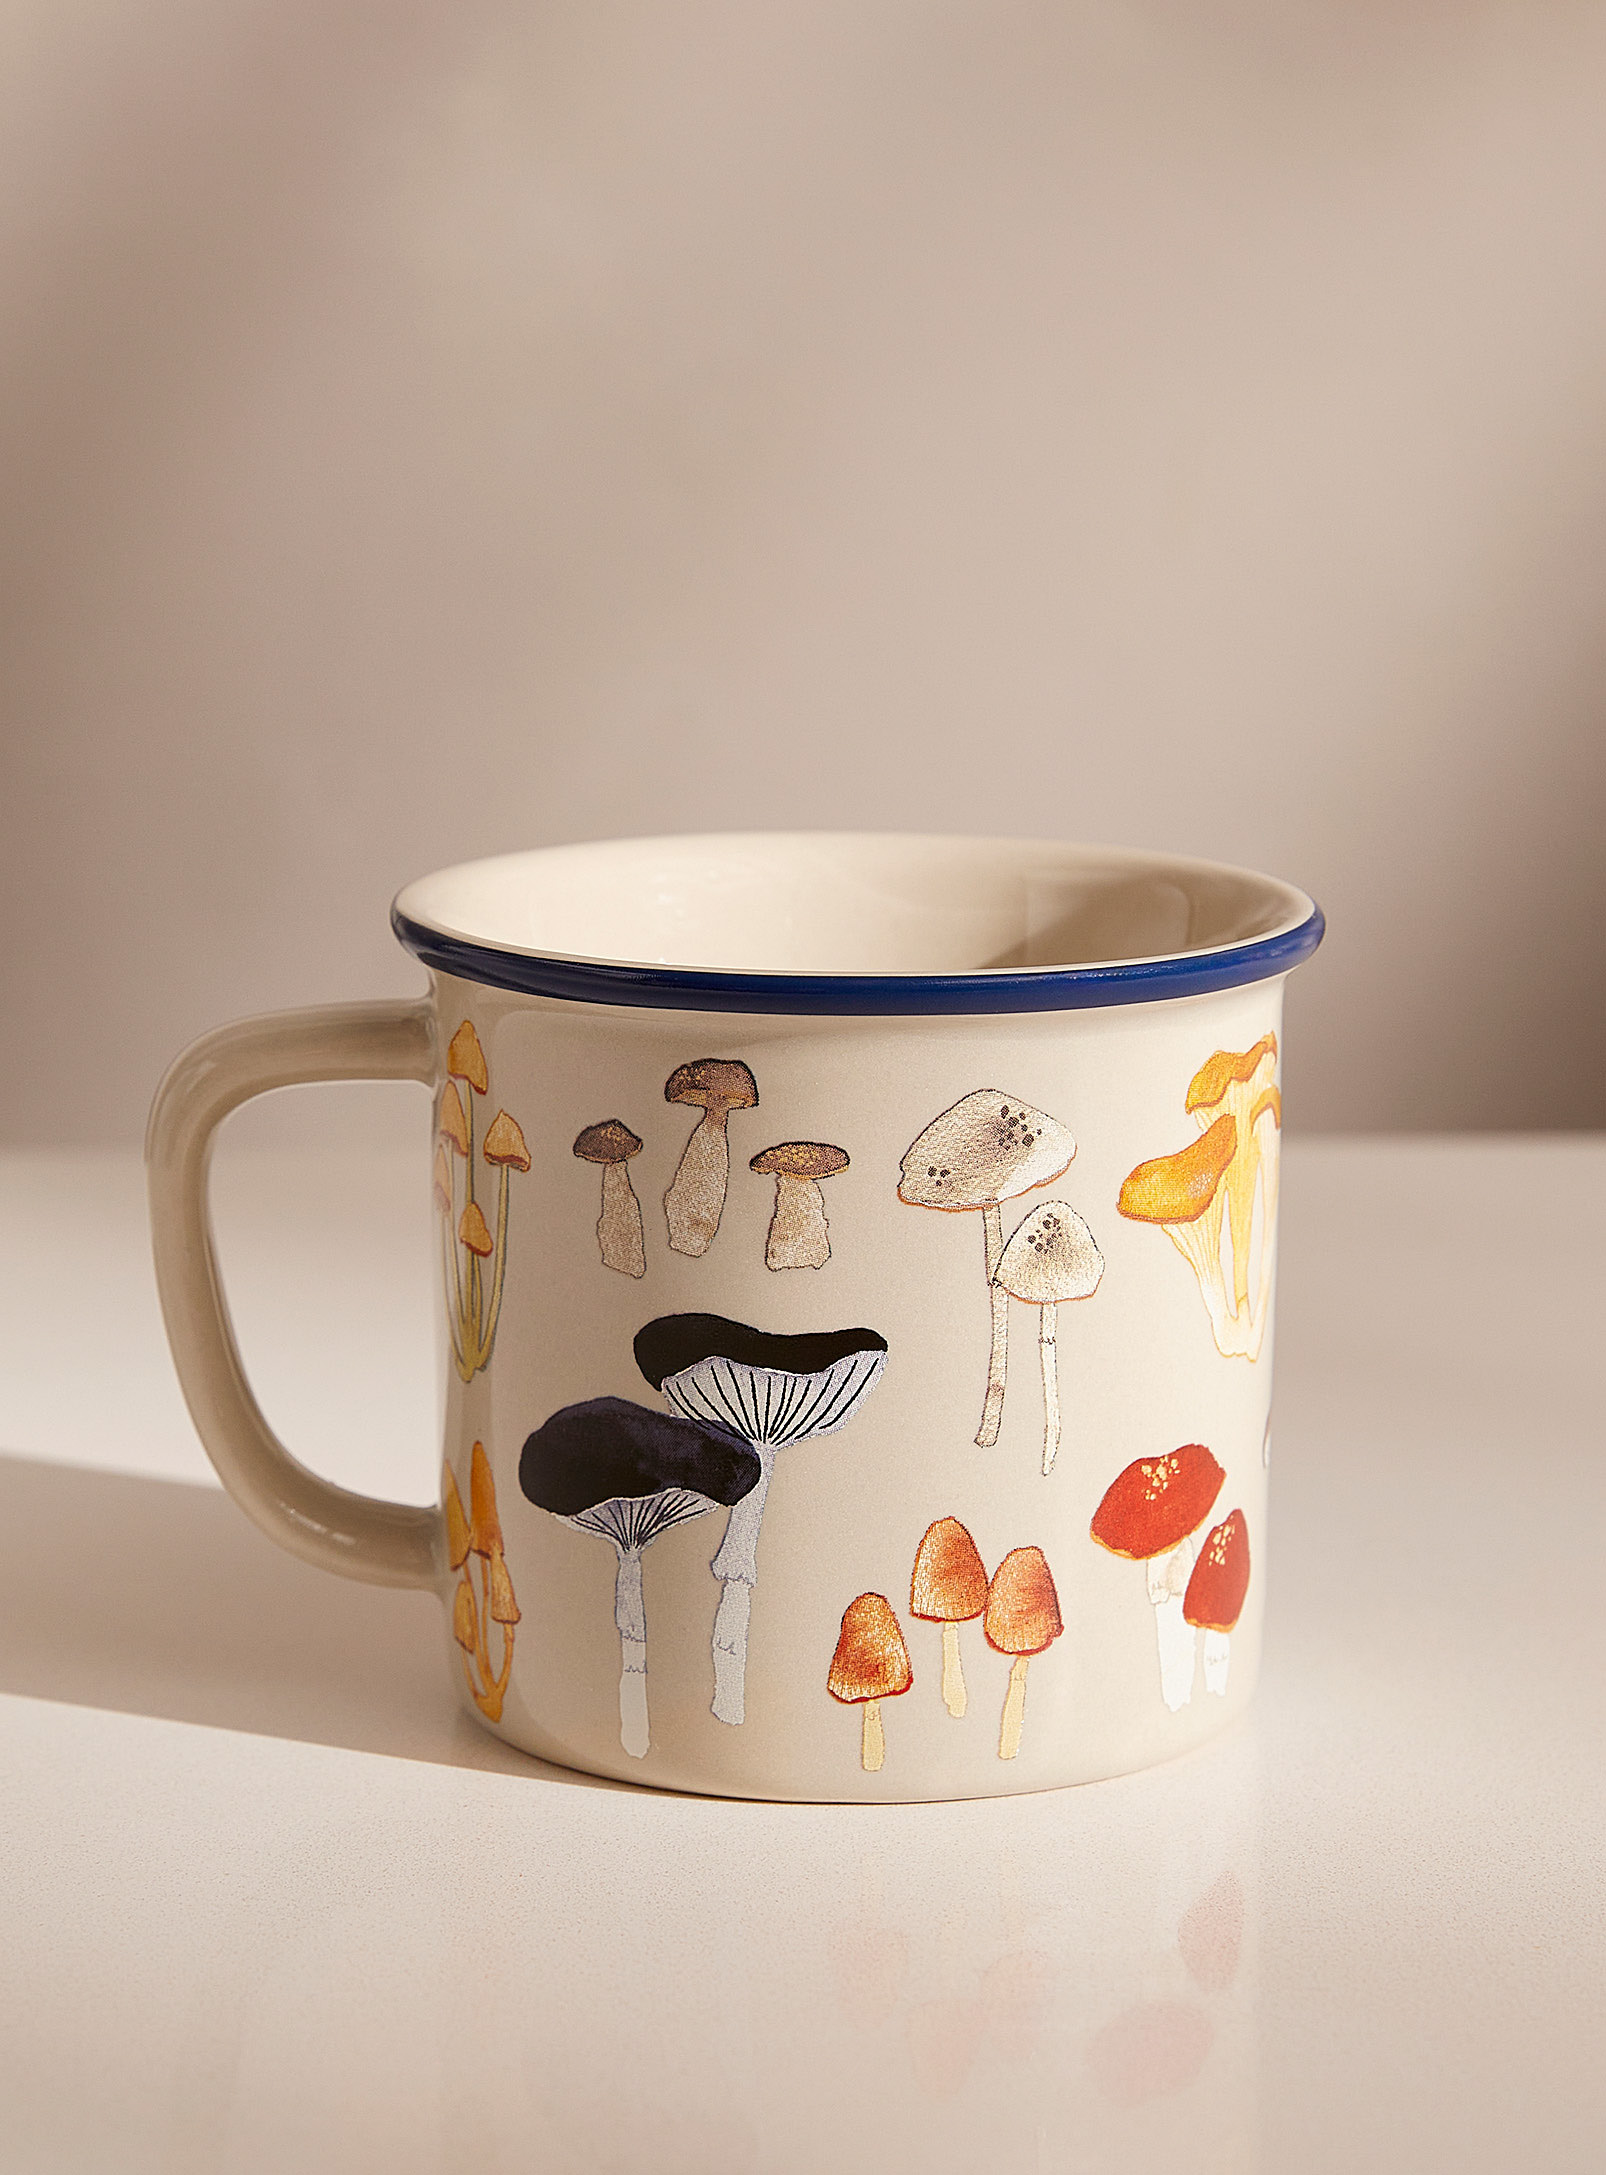 Danica - Wild mushrooms mug